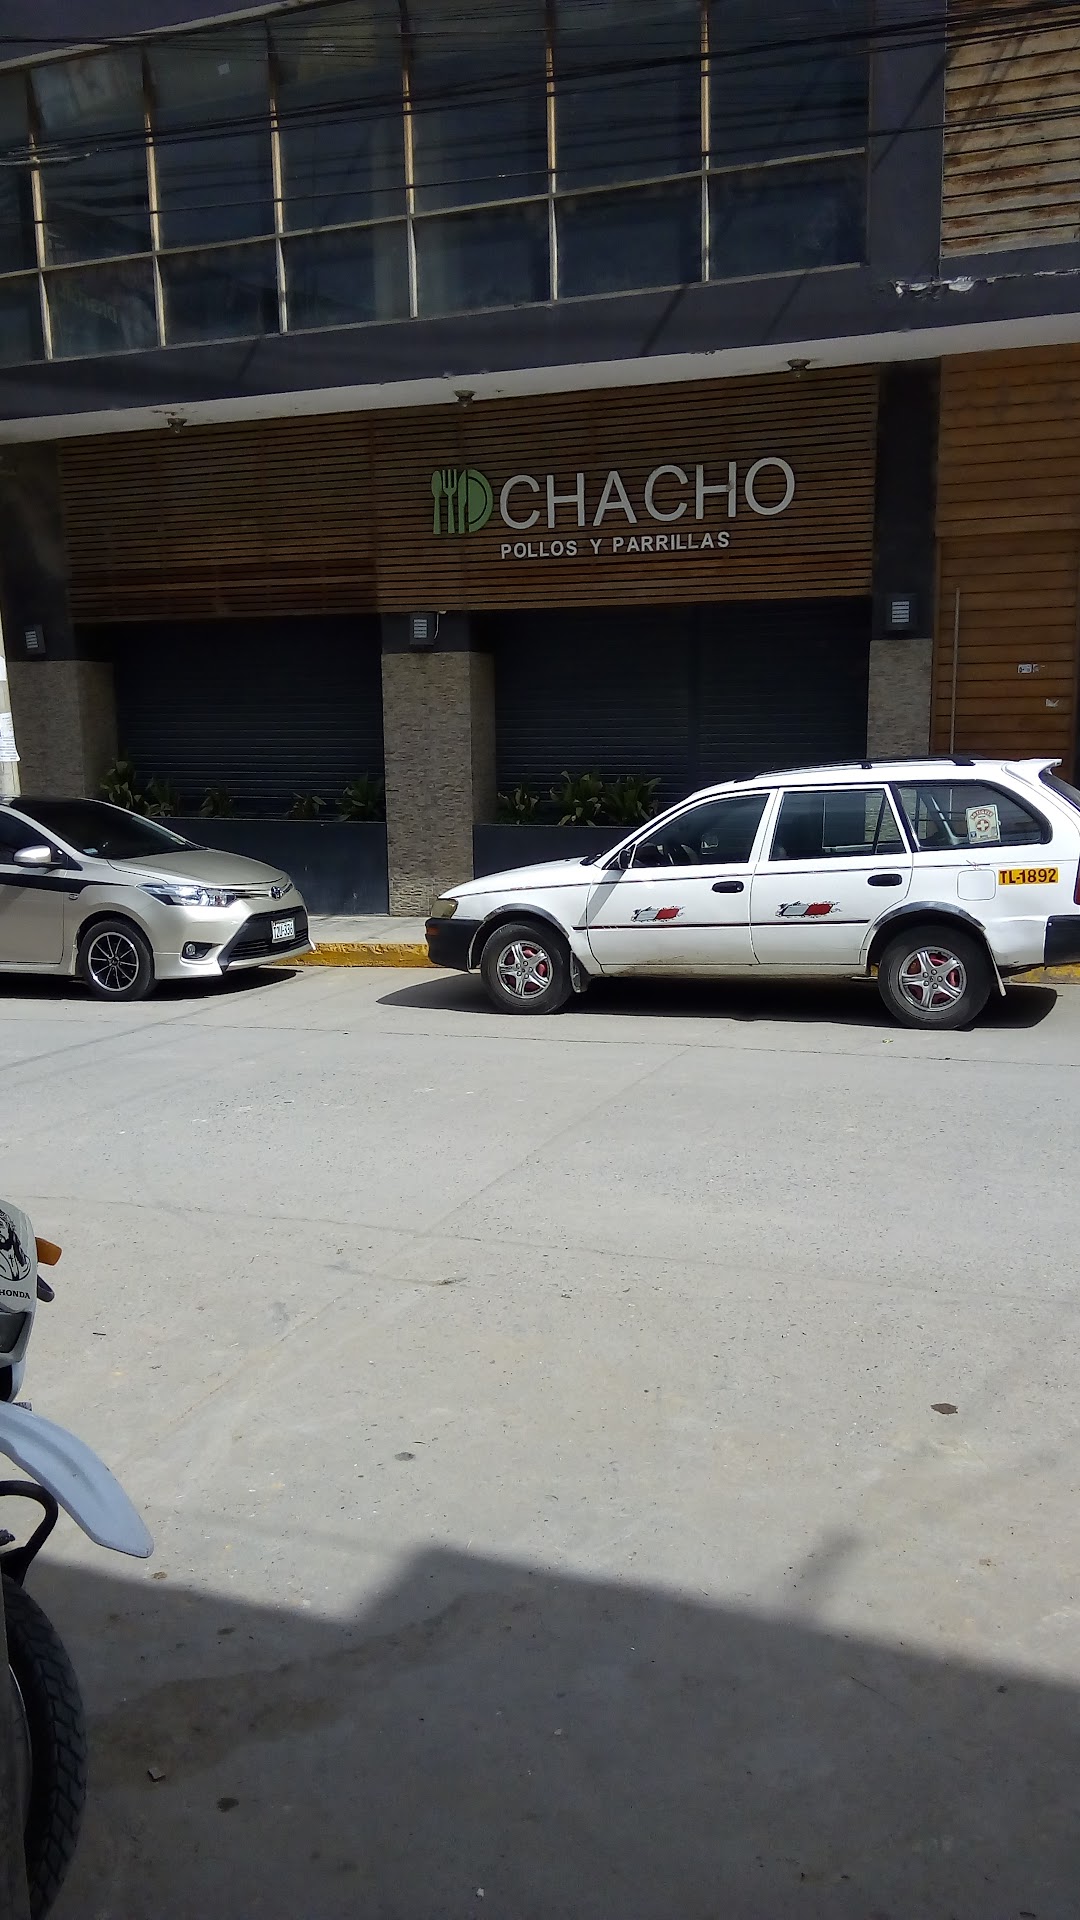 Restaurante El Chacho